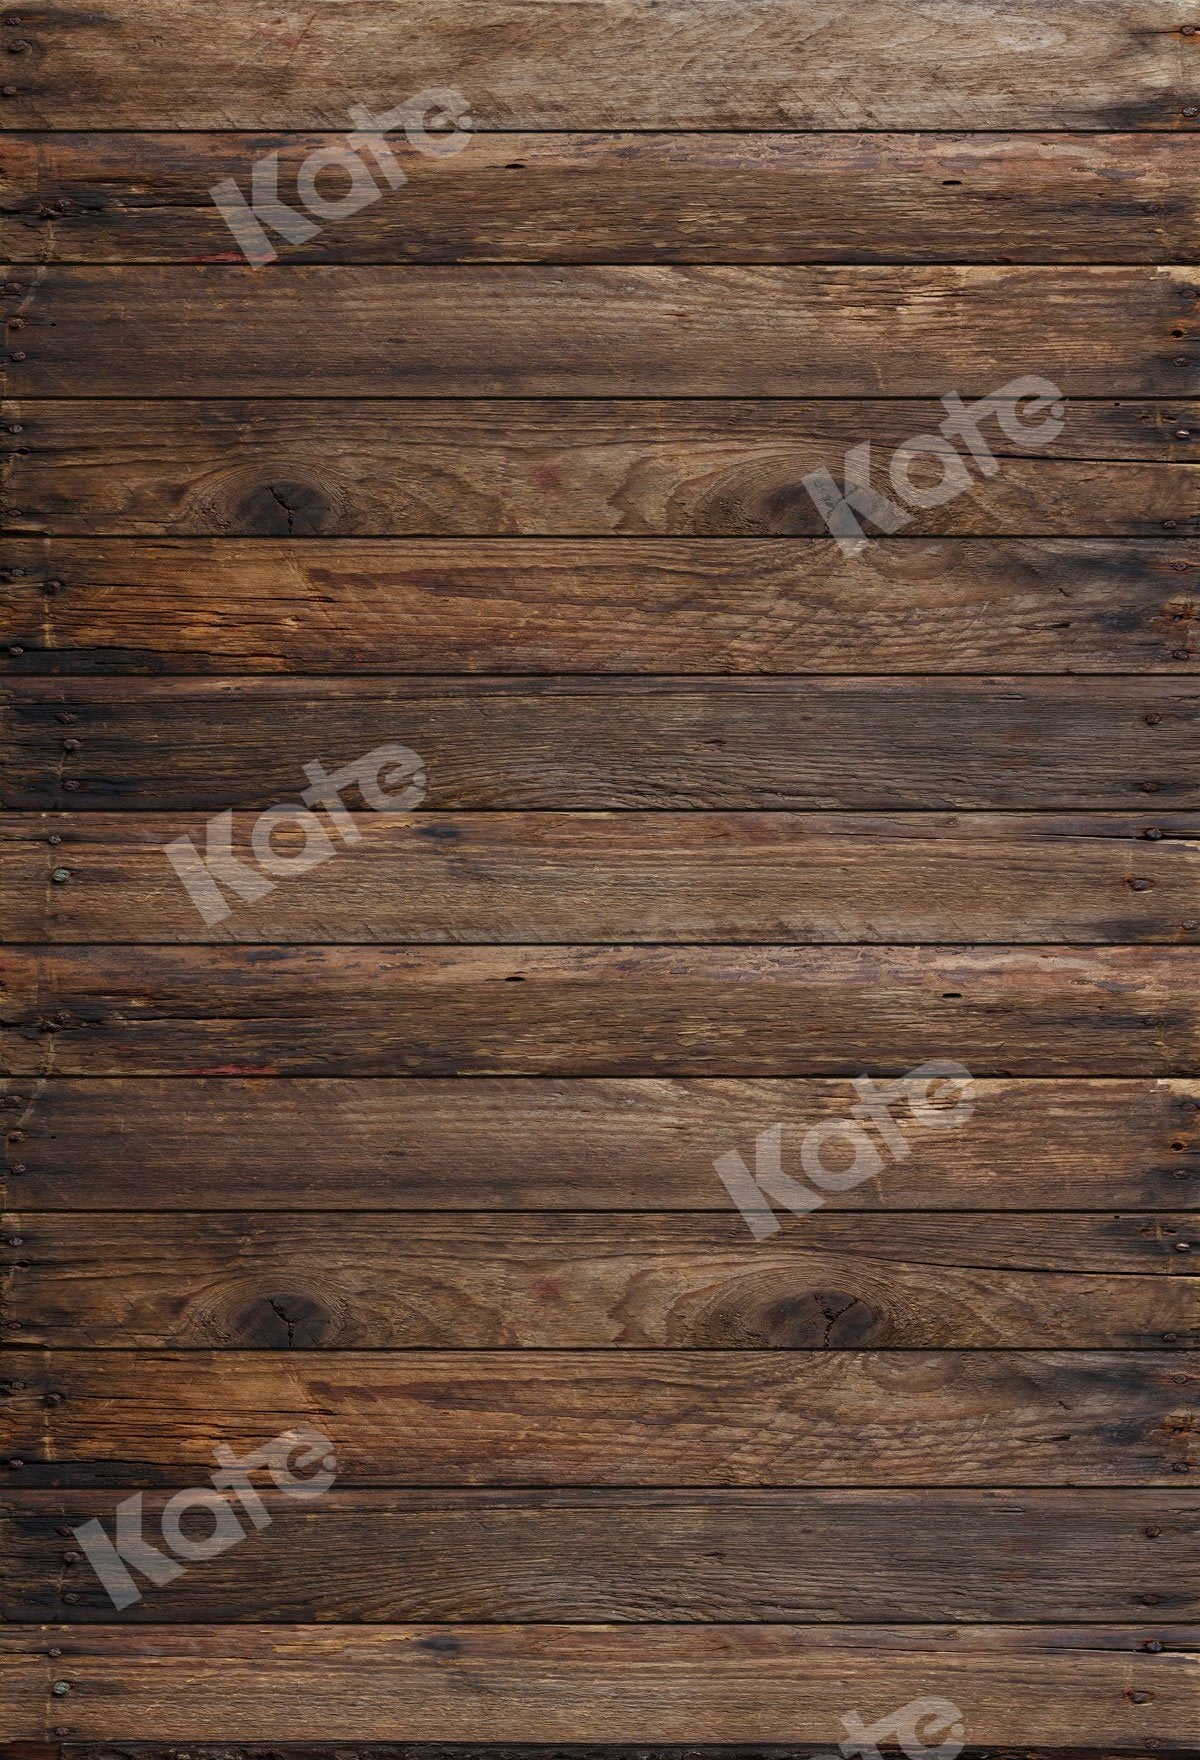 kate子供の写真のための暗い木製の背景